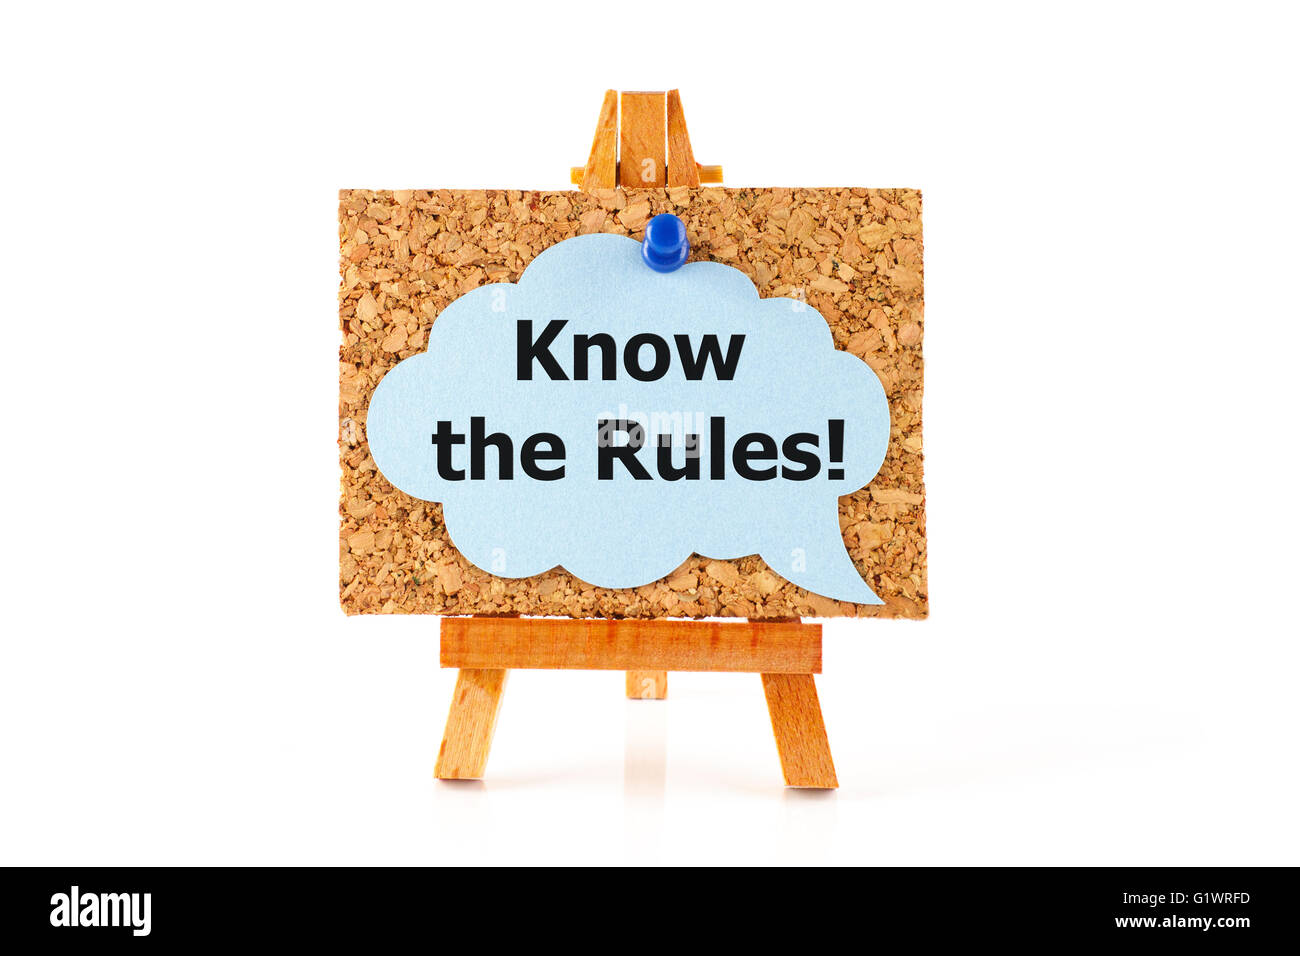 Hölzerne Staffelei mit Kork Board und blau Sprechblase Worte kennen die Regeln! auf weißem Hintergrund Stockfoto